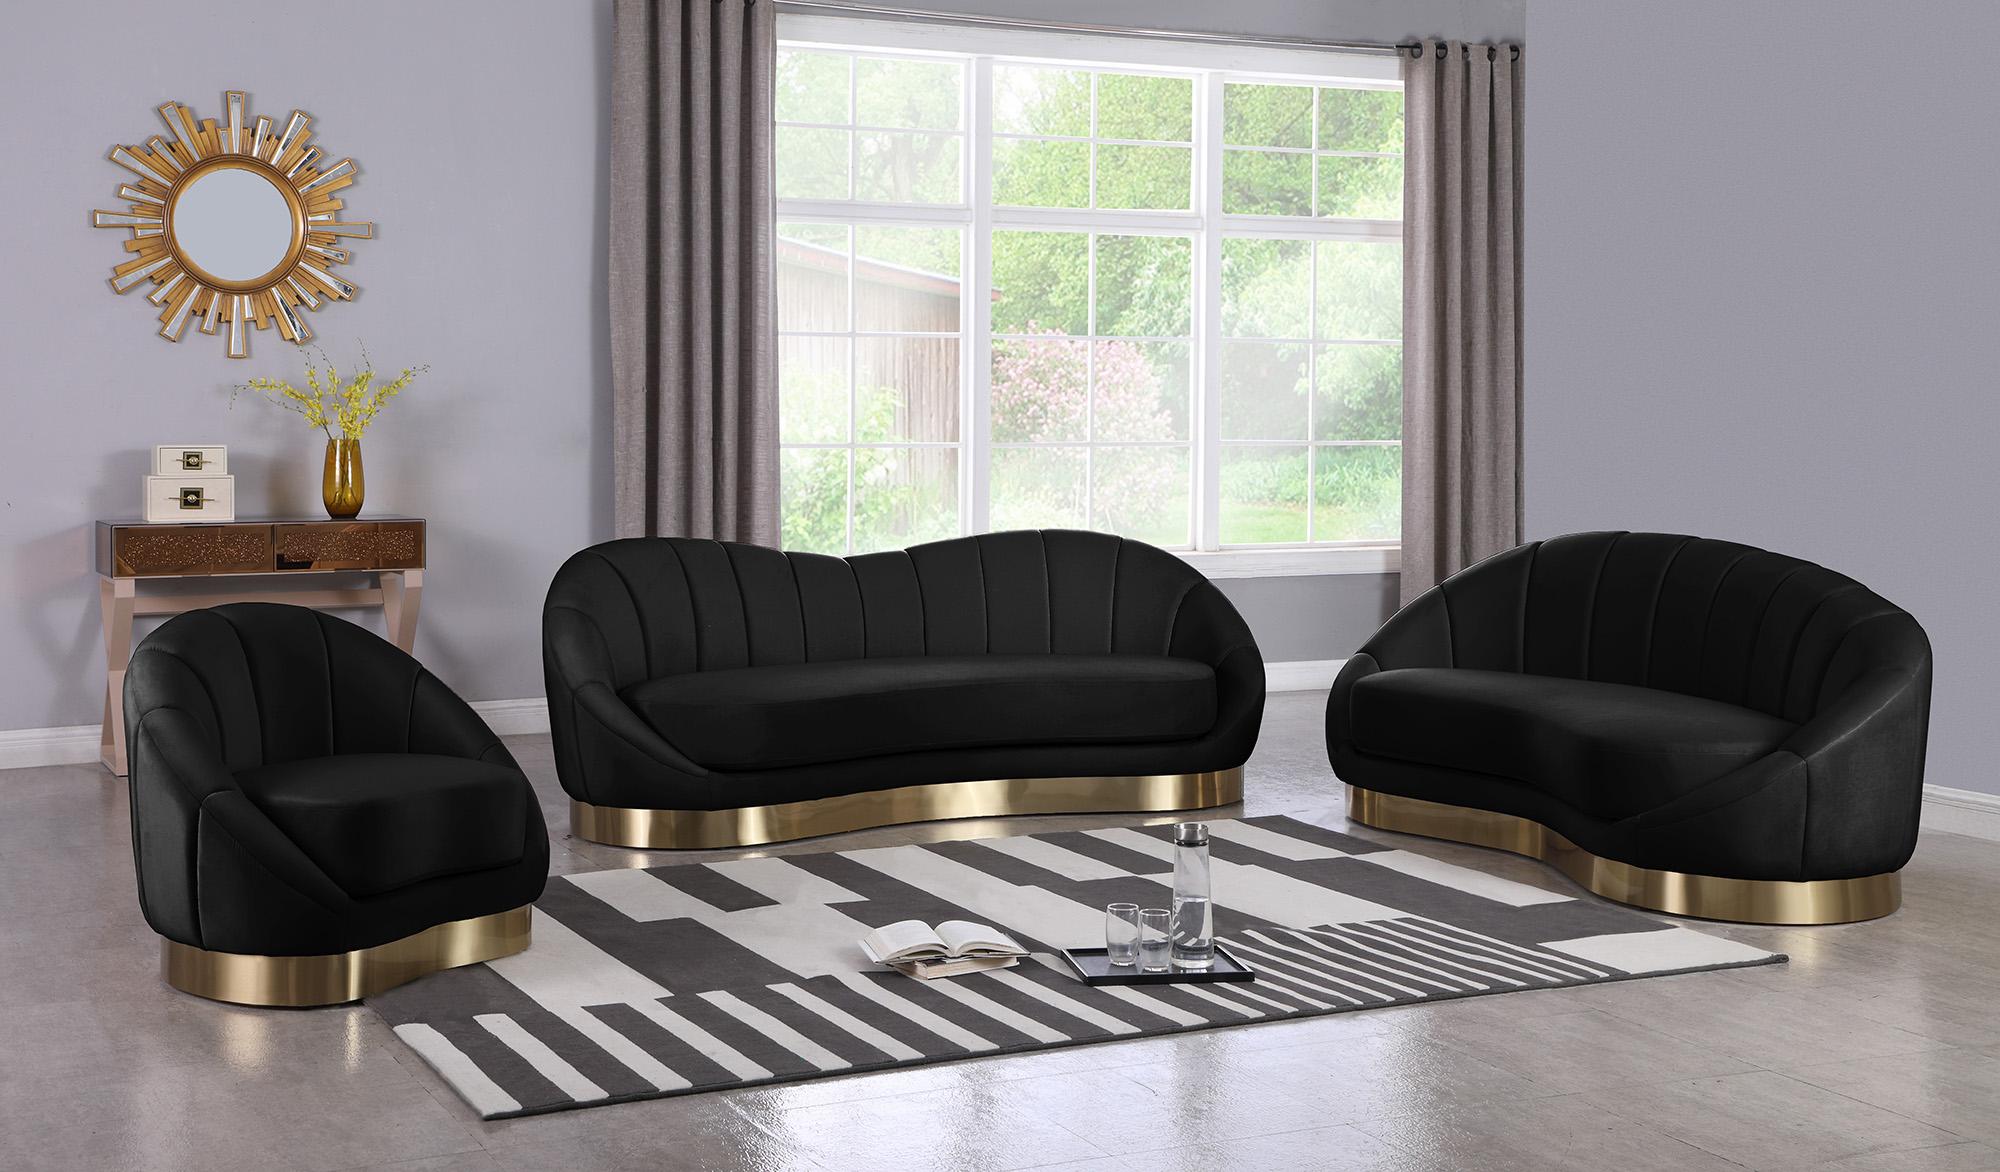 

    
623Black-C Black Velvet Rounded Chair SHELLY 623Black-C Meridian Contemporary Modern
